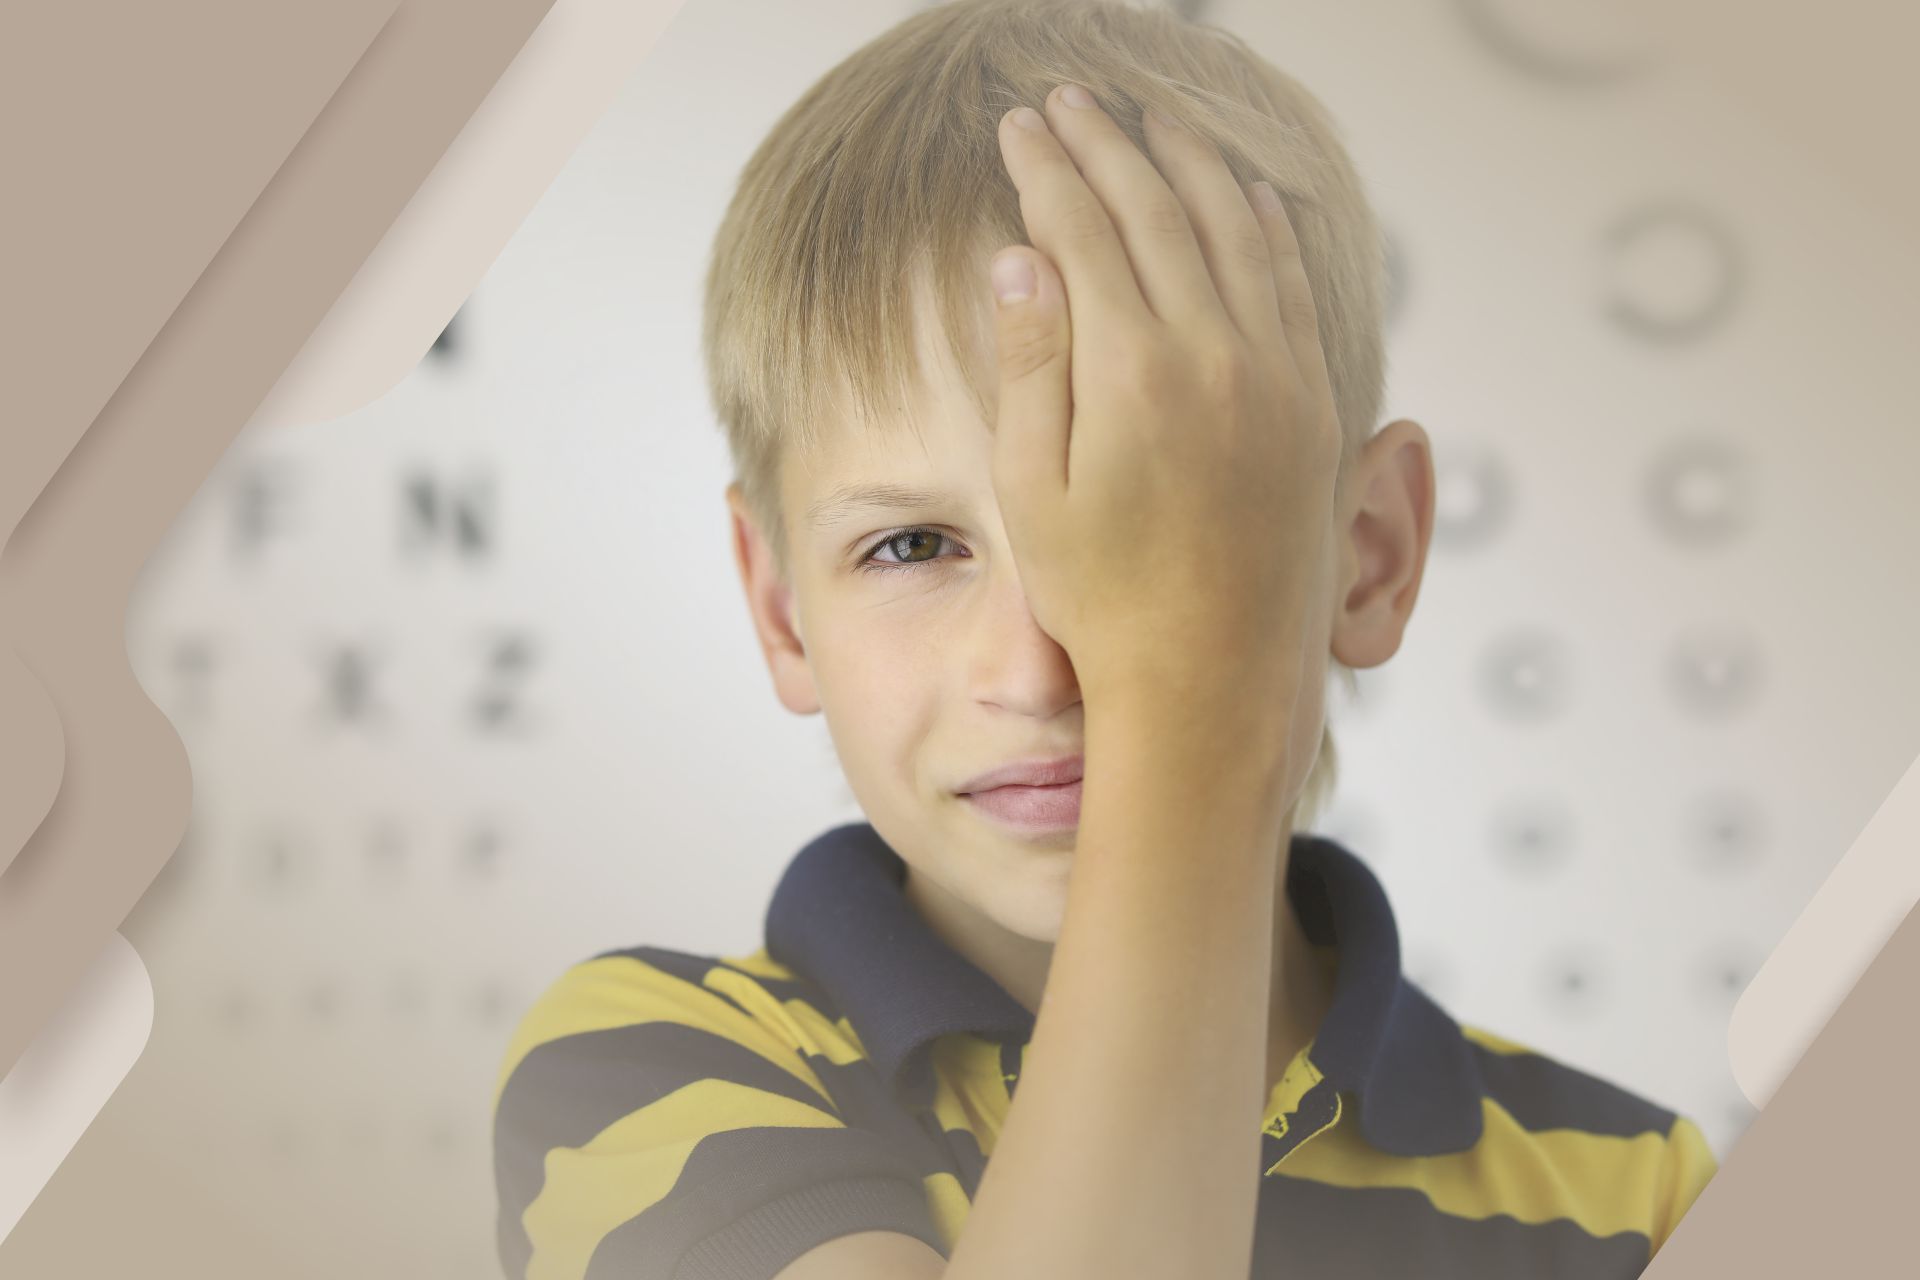 Ambliopia ou olho preguiçoso - o que é, tratamento, tem cura?